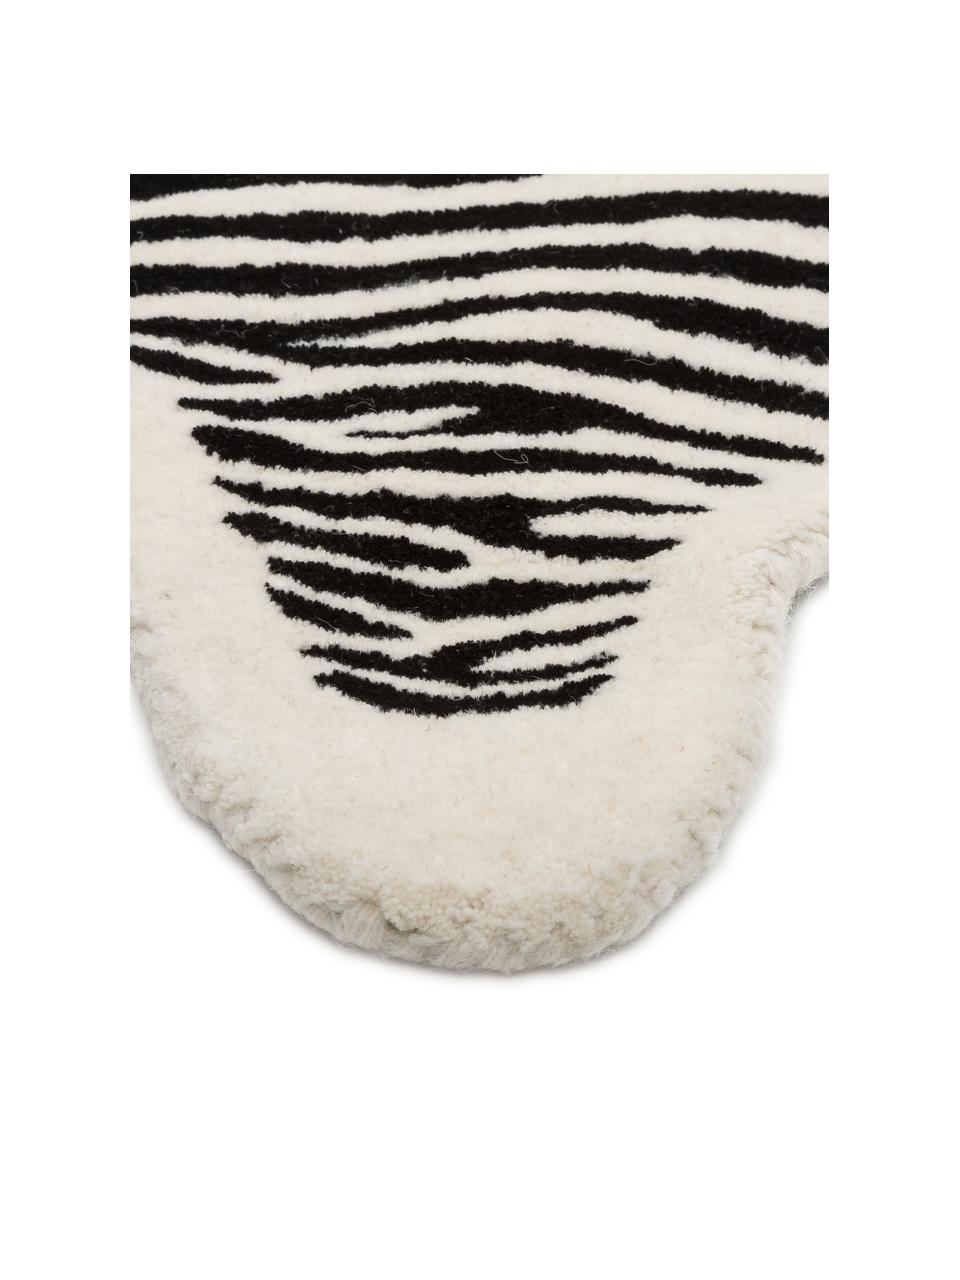 Tapis en laine noir tufté main Savanna Zebra, Noir, crème, larg. 160 x long. 200 cm